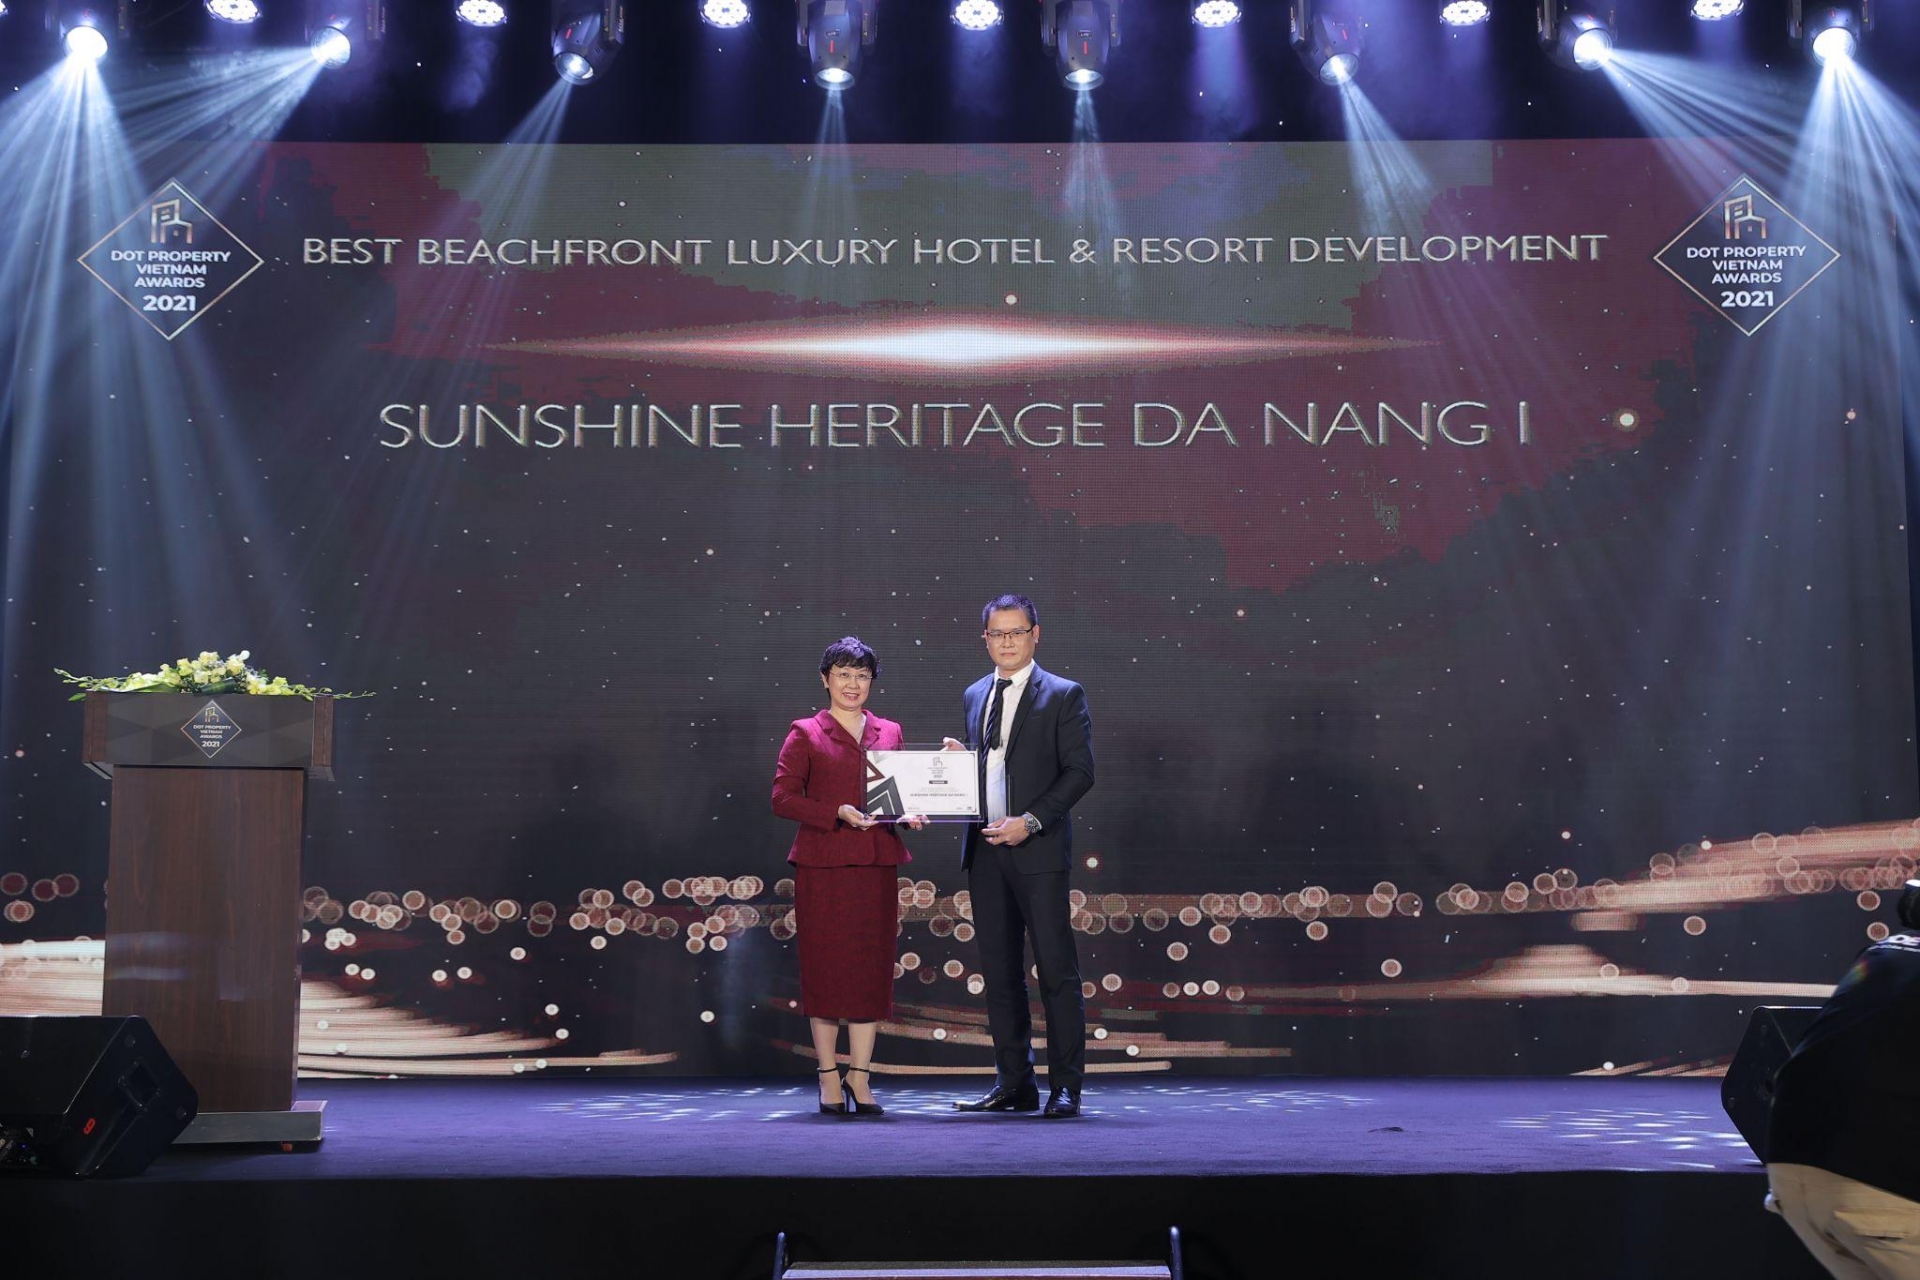 sunshine homes thang dam voi nhieu hang muc giai thuong quan trong tai dot property vietnam awards 2021